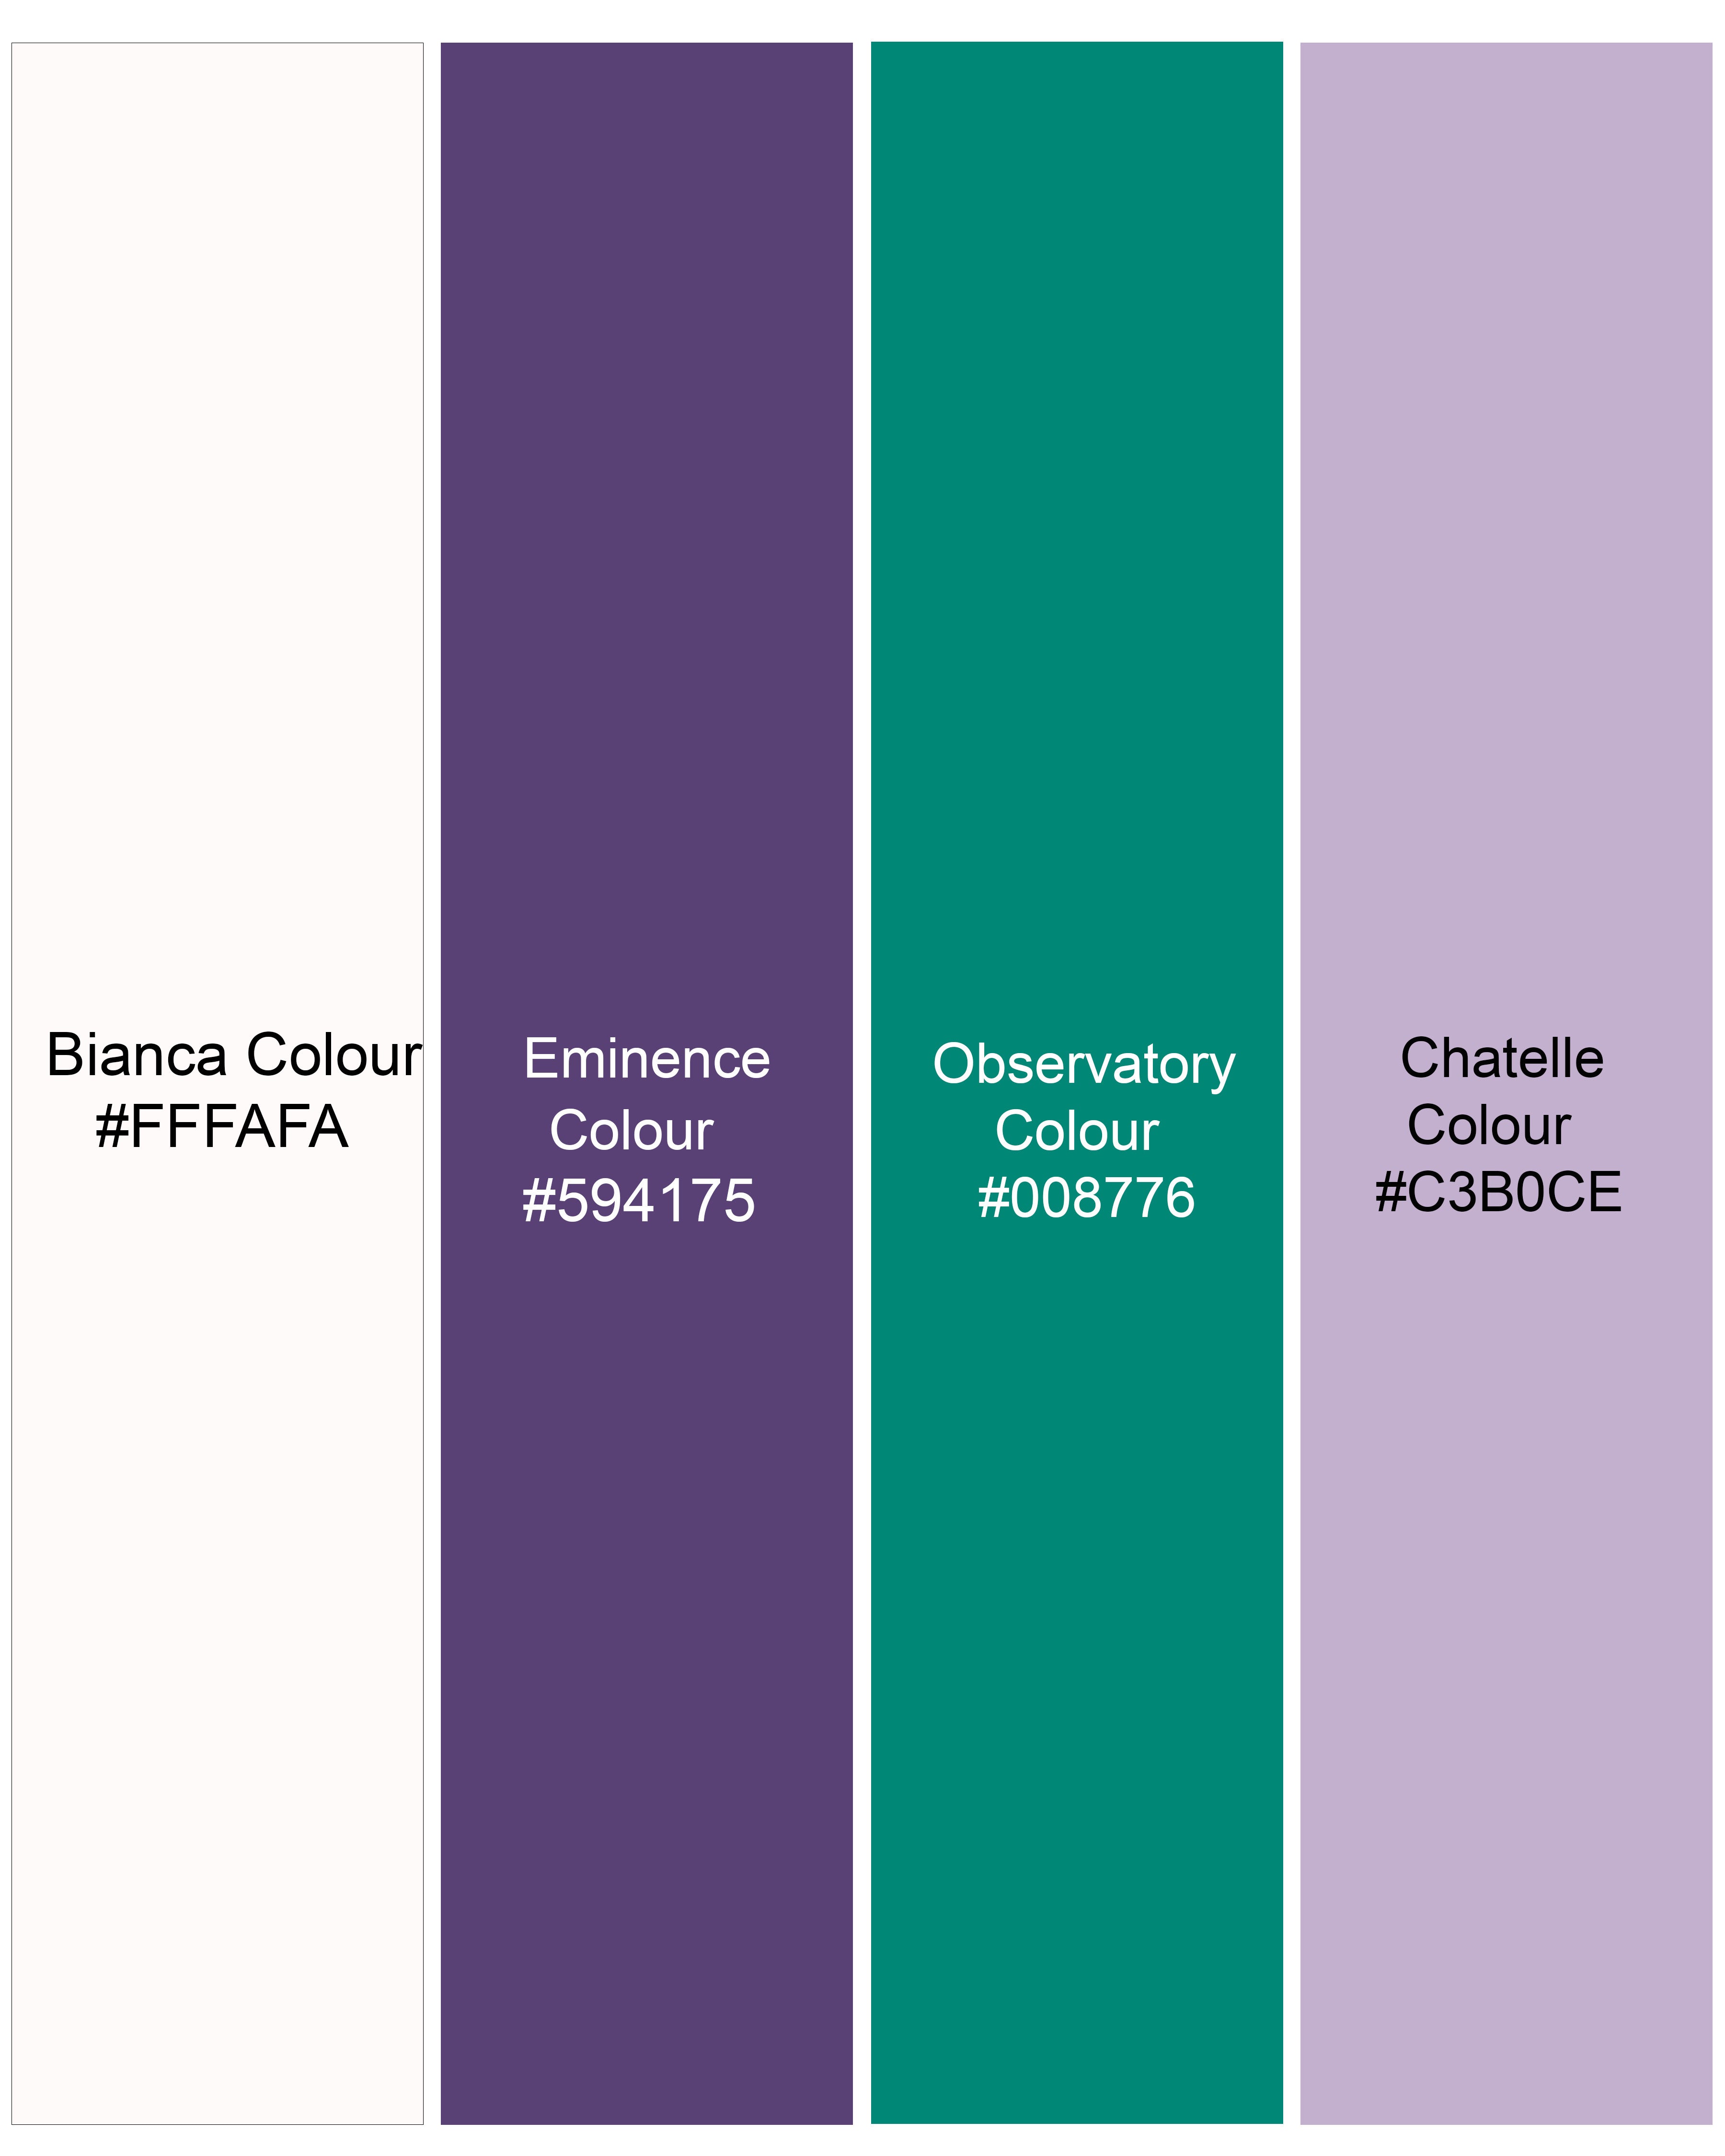 Bianca White with Eminence Purple Multicolour Striped Premium Cotton Shorts SR254-28, SR254-30, SR254-32, SR254-34, SR254-36, SR254-38, SR254-40, SR254-42, SR254-44